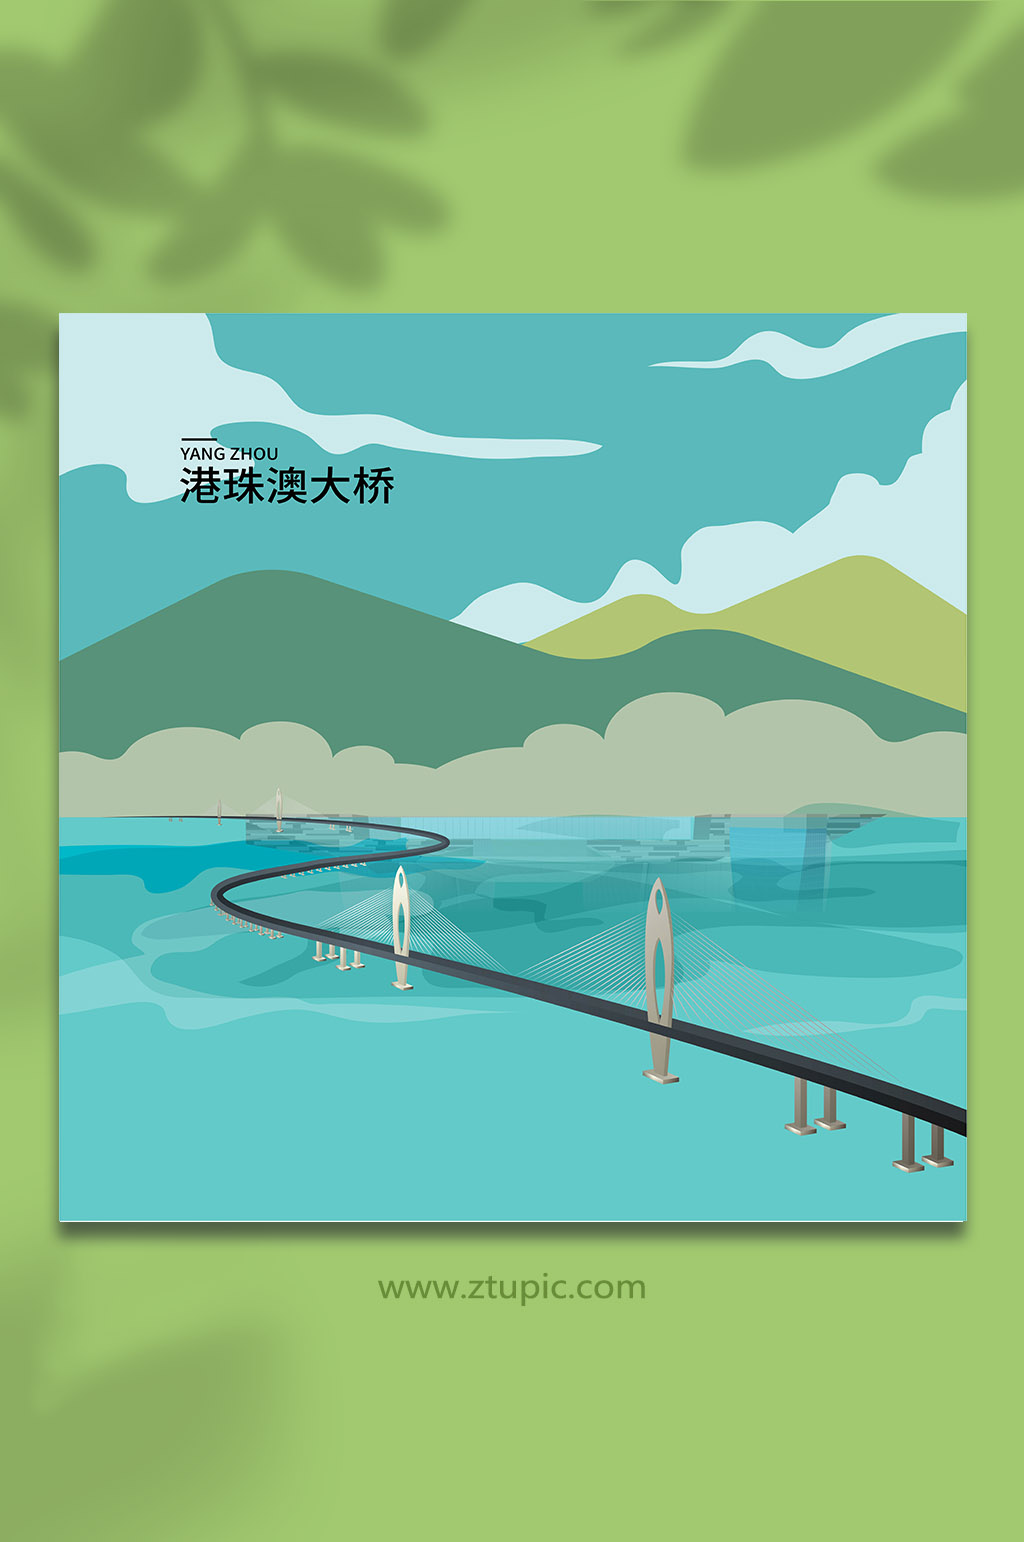 海珠桥手绘图片